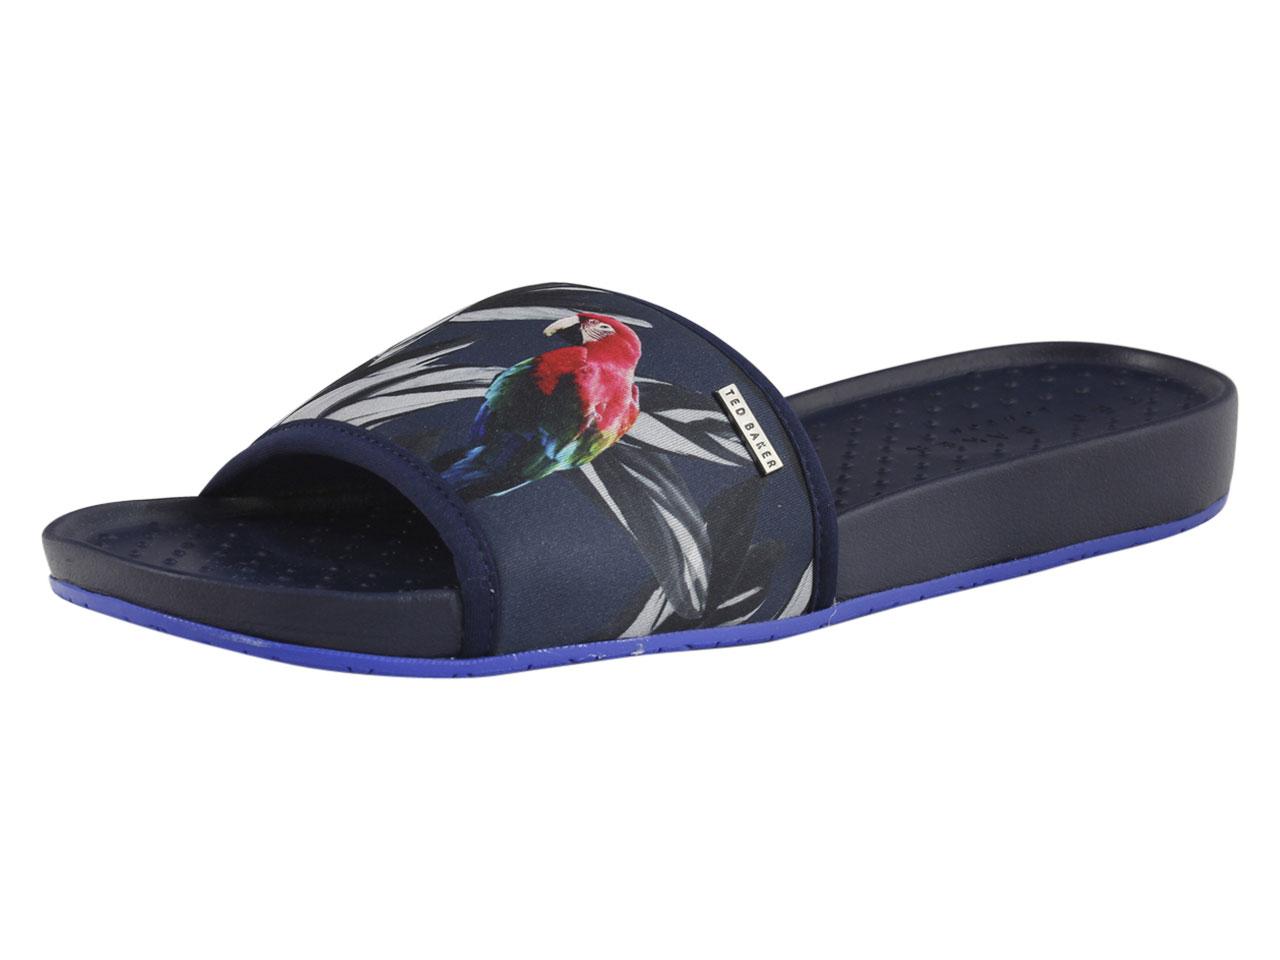 Ted Baker Men's Sauldi Slides Sandals Shoes - Blue - 8 D(M) US